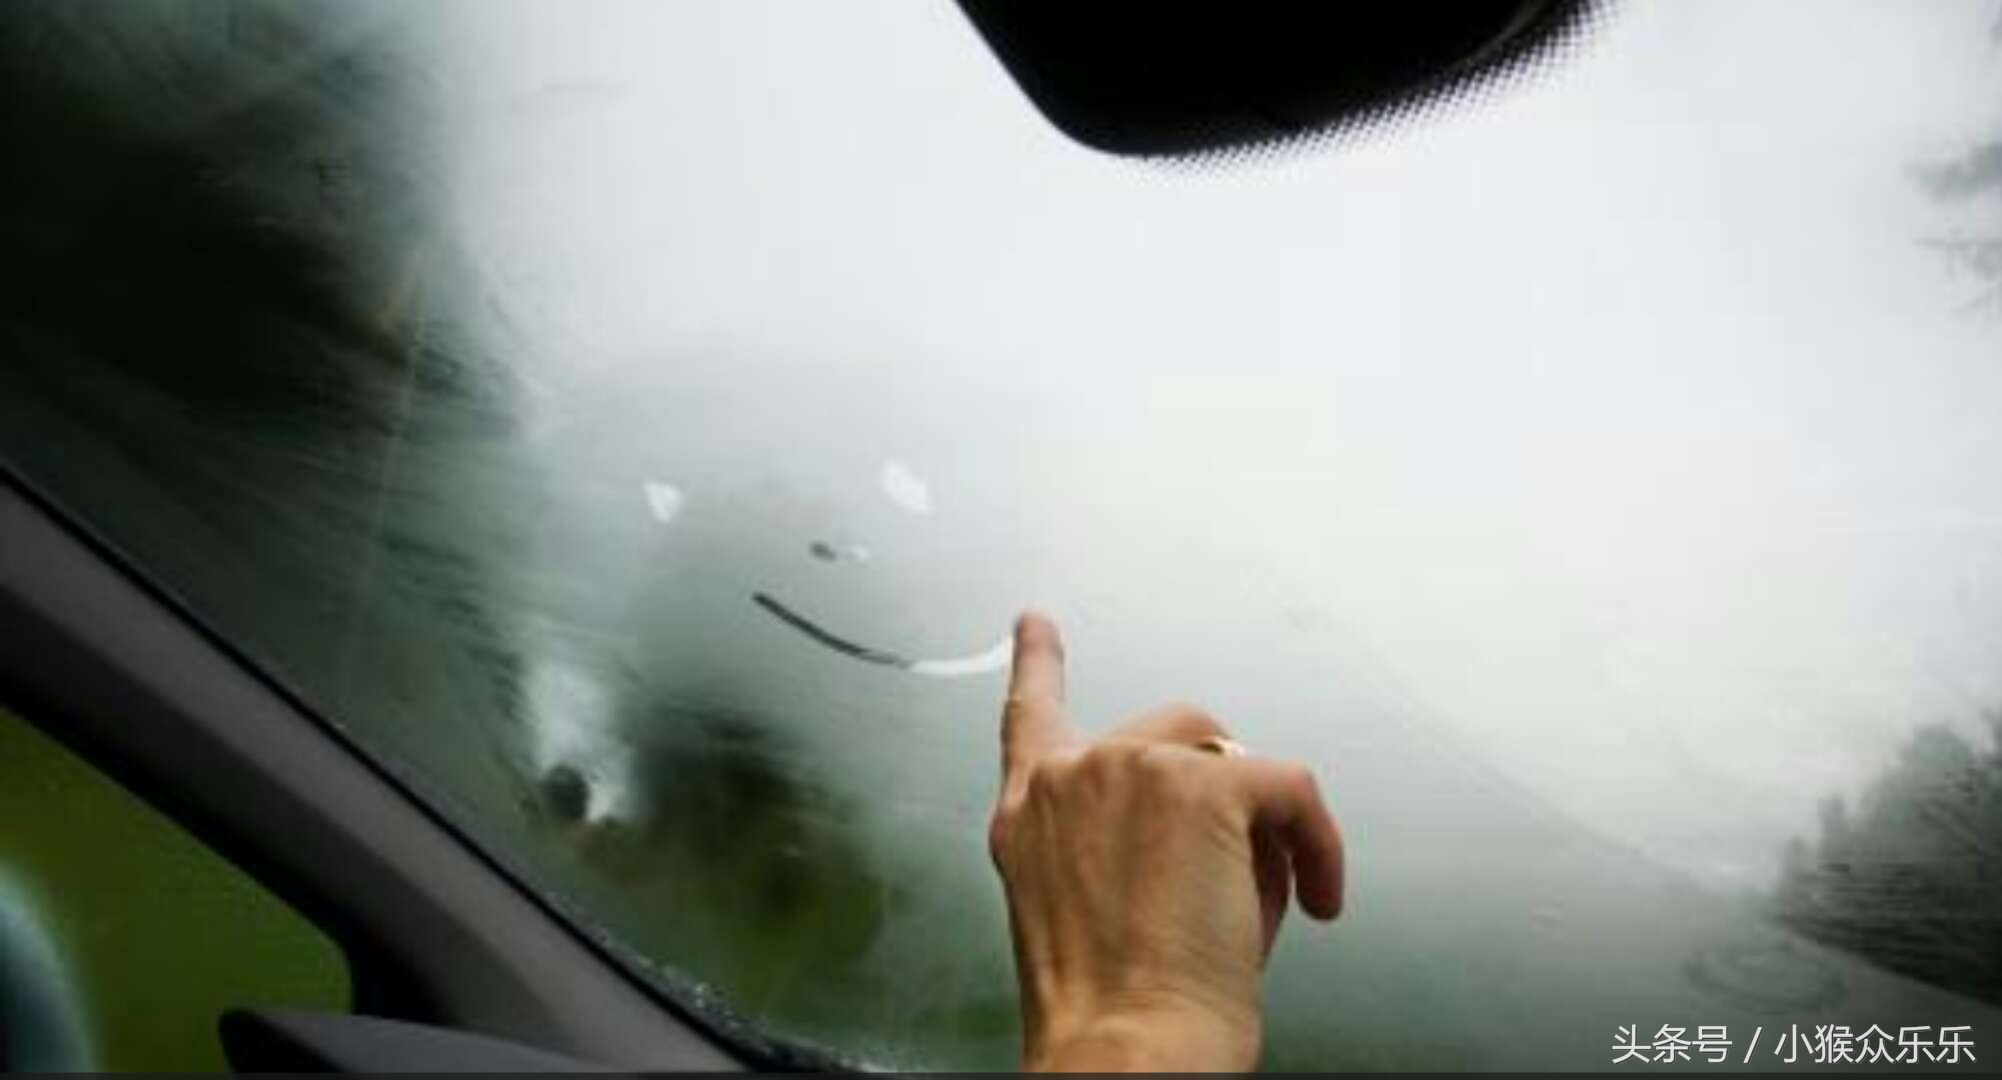 秋冬季节,车窗常起雾,还在傻傻用手擦?这几个妙招老司机都知道